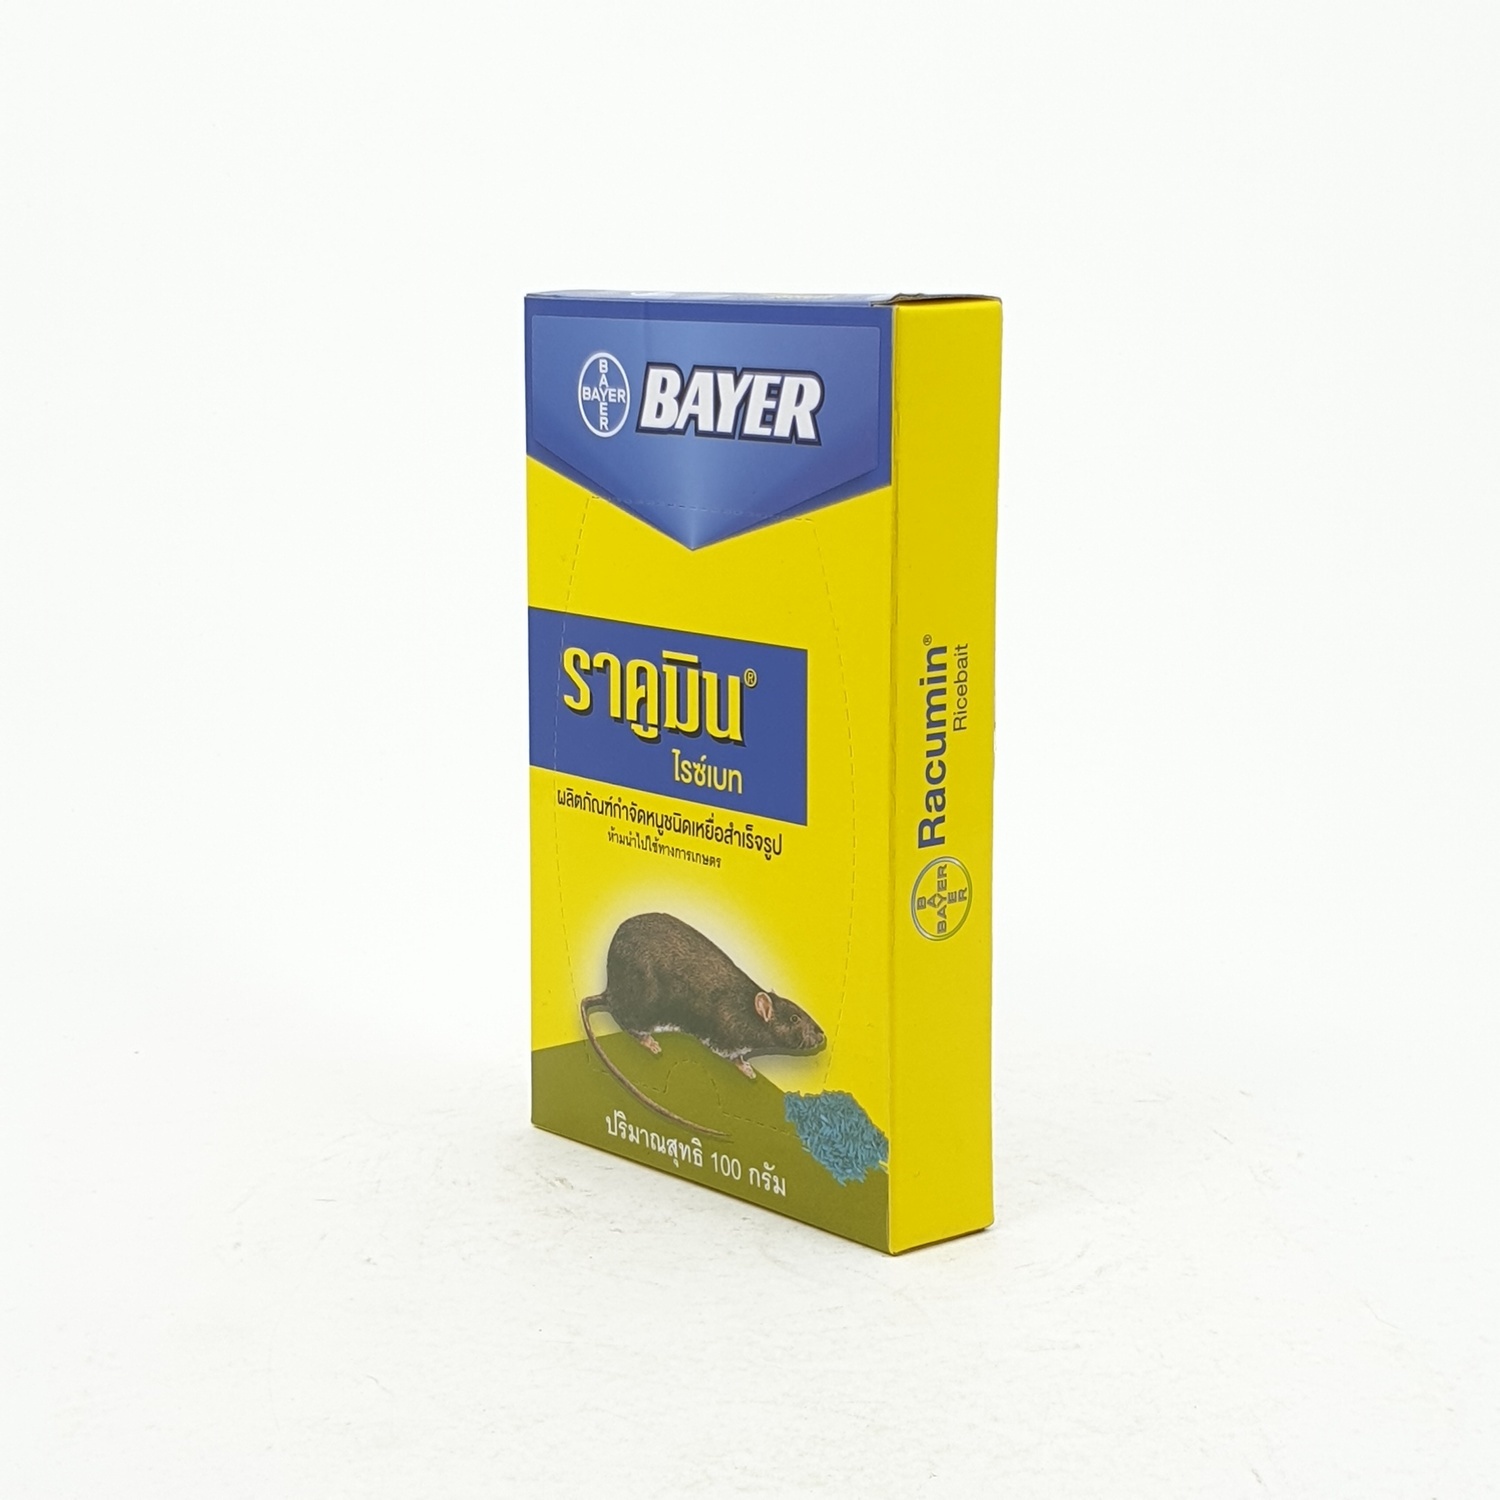 Bayer เหยื่อกำจัดหนู ราคูมิน ชนิดข้าวสารกล่อง 100 กรัม